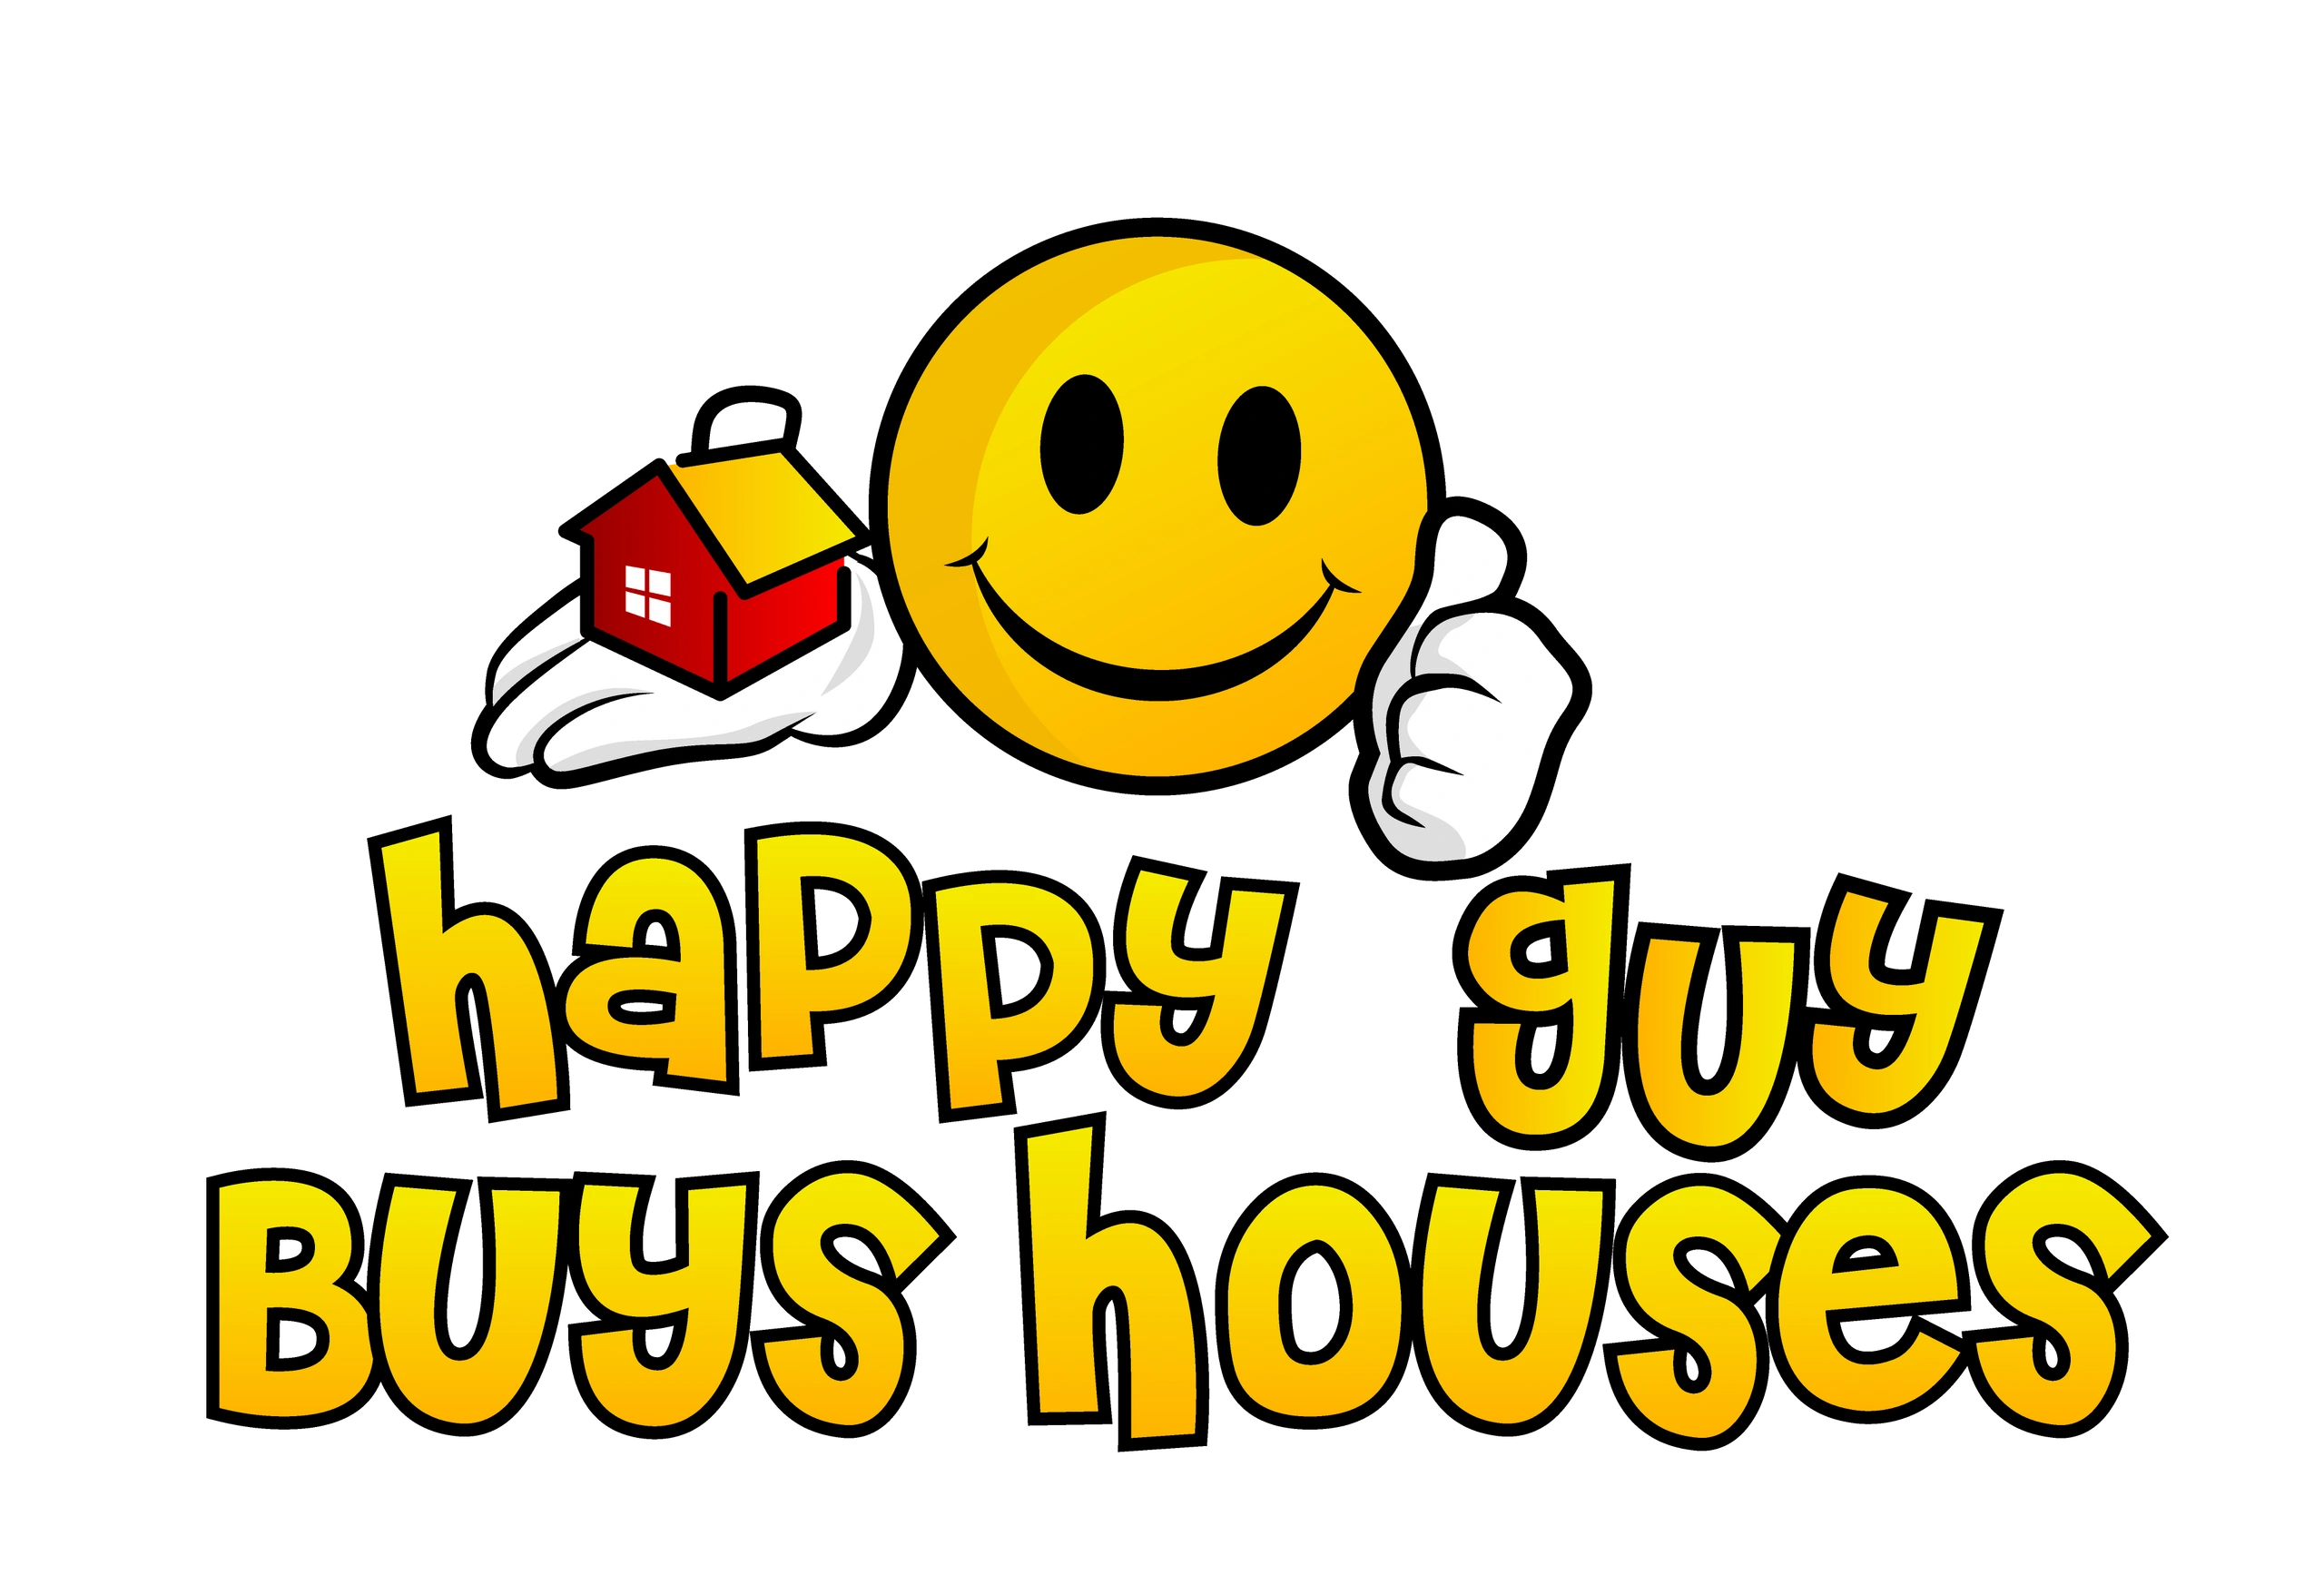 Happy Guy Buys Houses
We buy houses in OKC
We buy houses cash